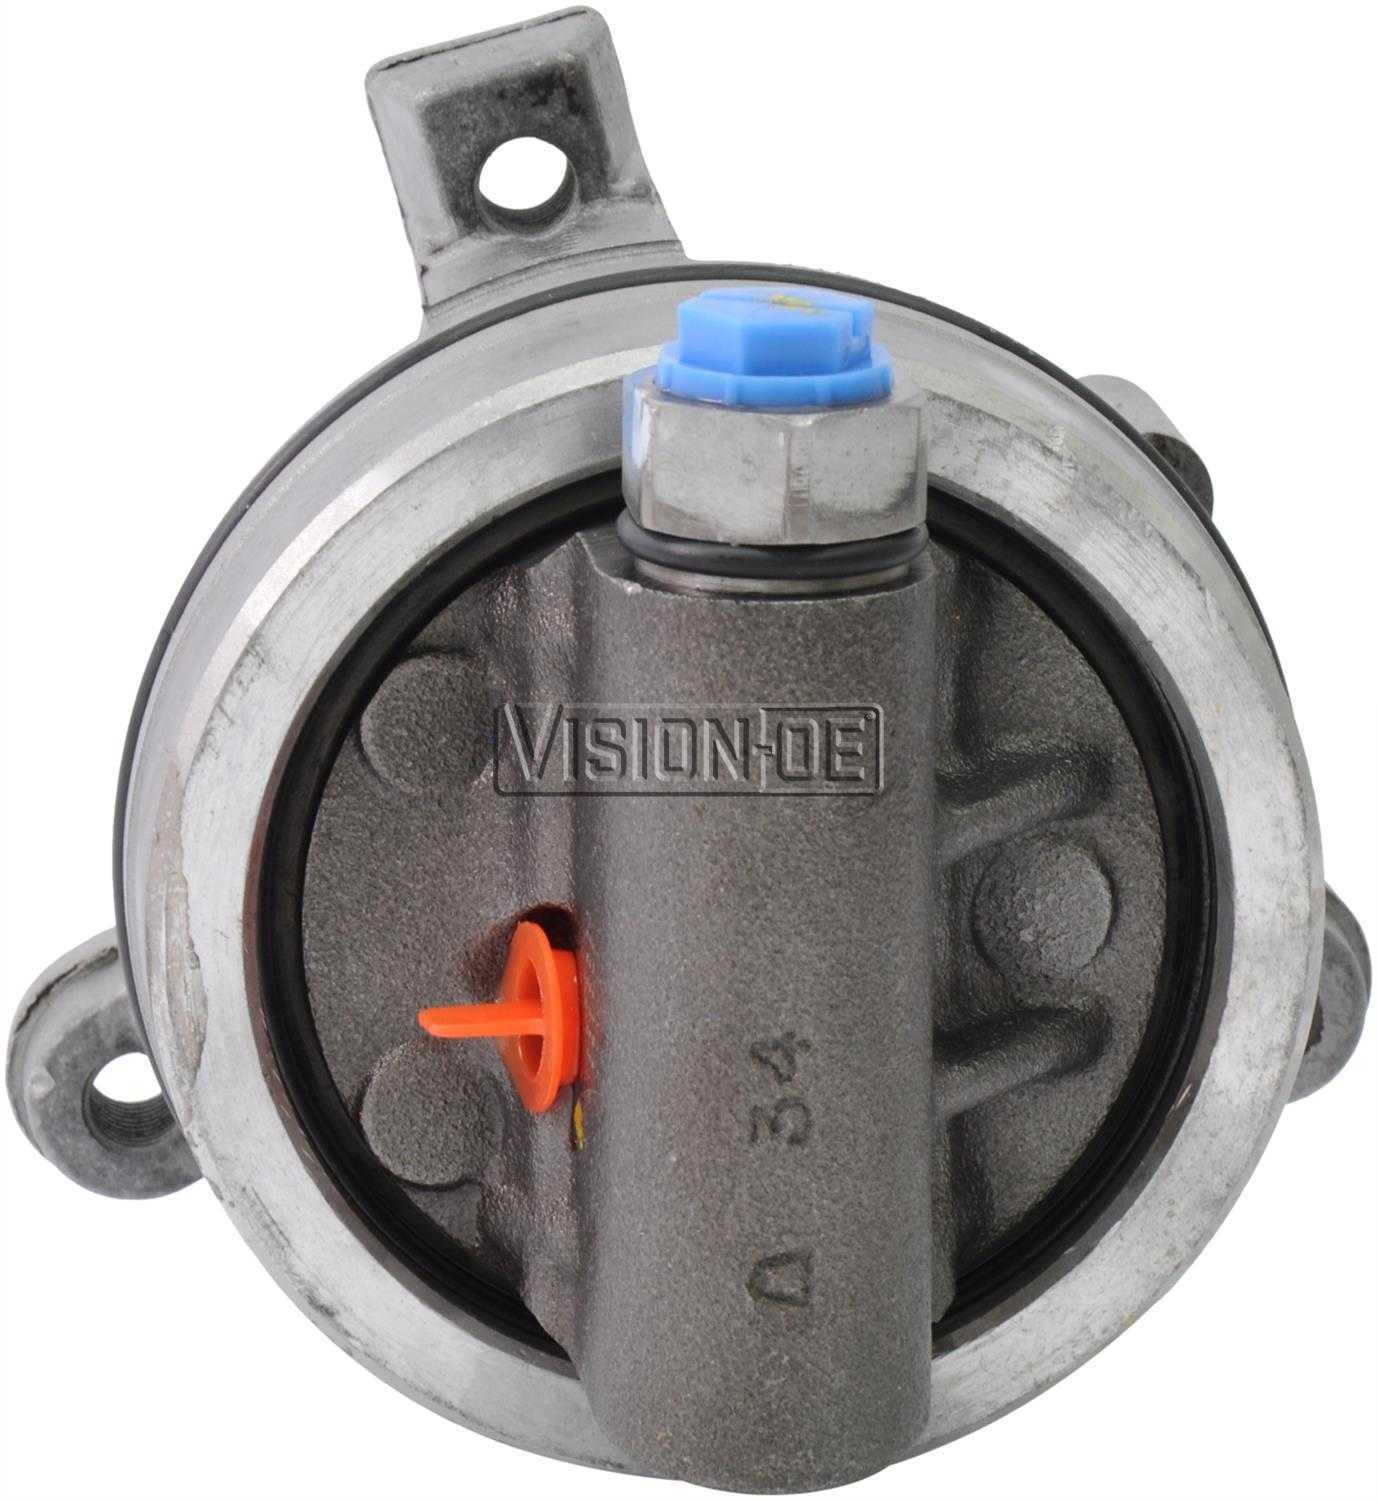 VISION-OE - Reman Power Steering Pump - VOE 711-0104